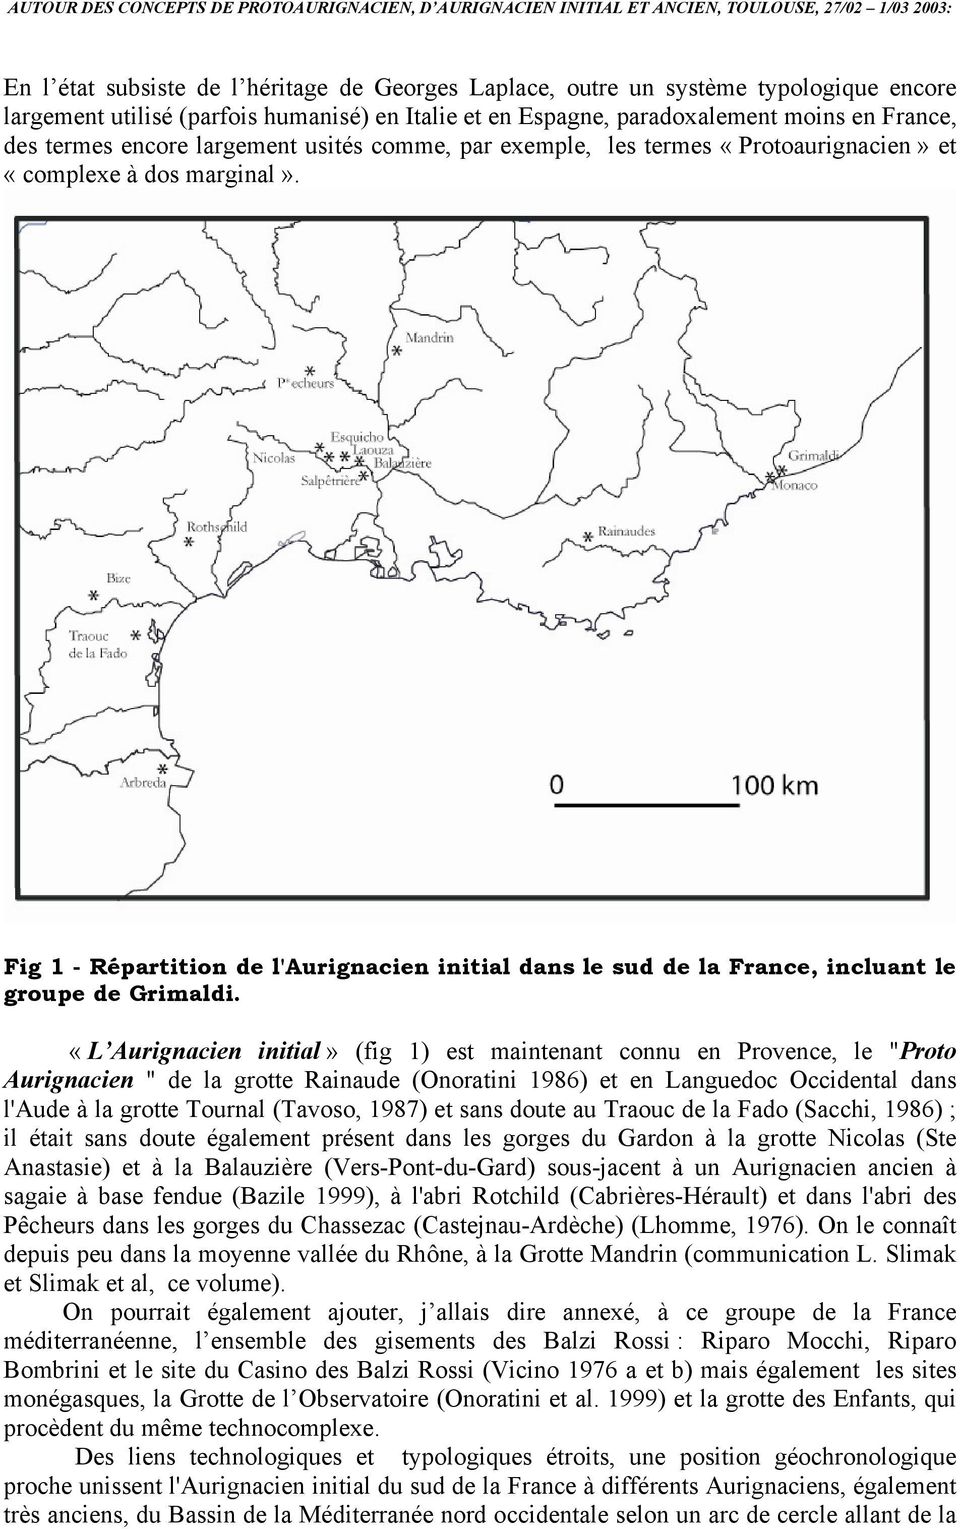 Fig 1 - Répartition de l'aurignacien initial dans le sud de la France, incluant le groupe de Grimaldi.